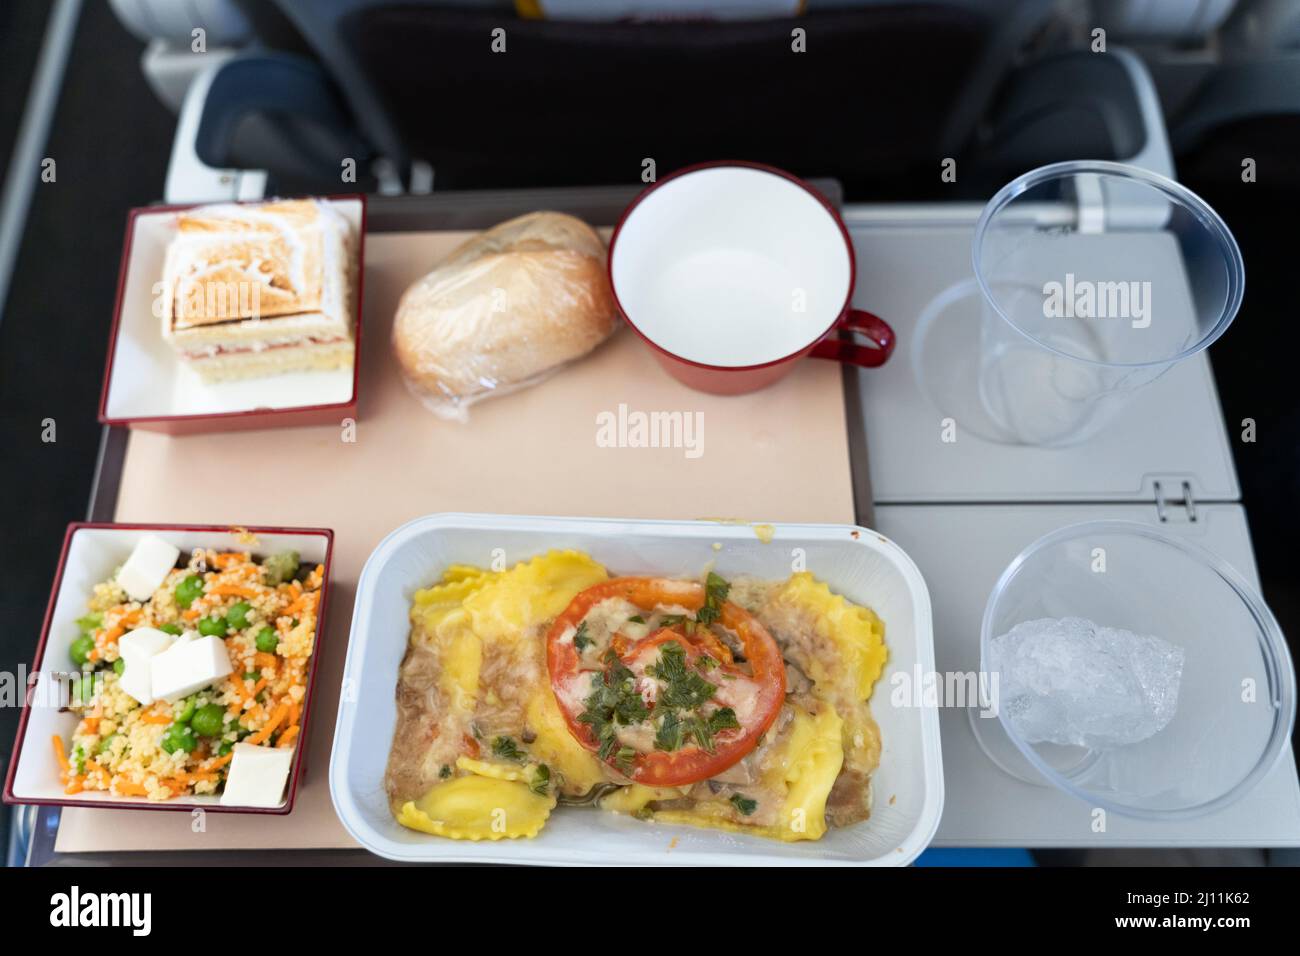 Flugzeug-Food-Menü auf Tablett. Vegetarische Mahlzeit mit Pasta, Salat, Kuchen, Brot und leeren Plastikgläsern im Flugzeug Stockfoto